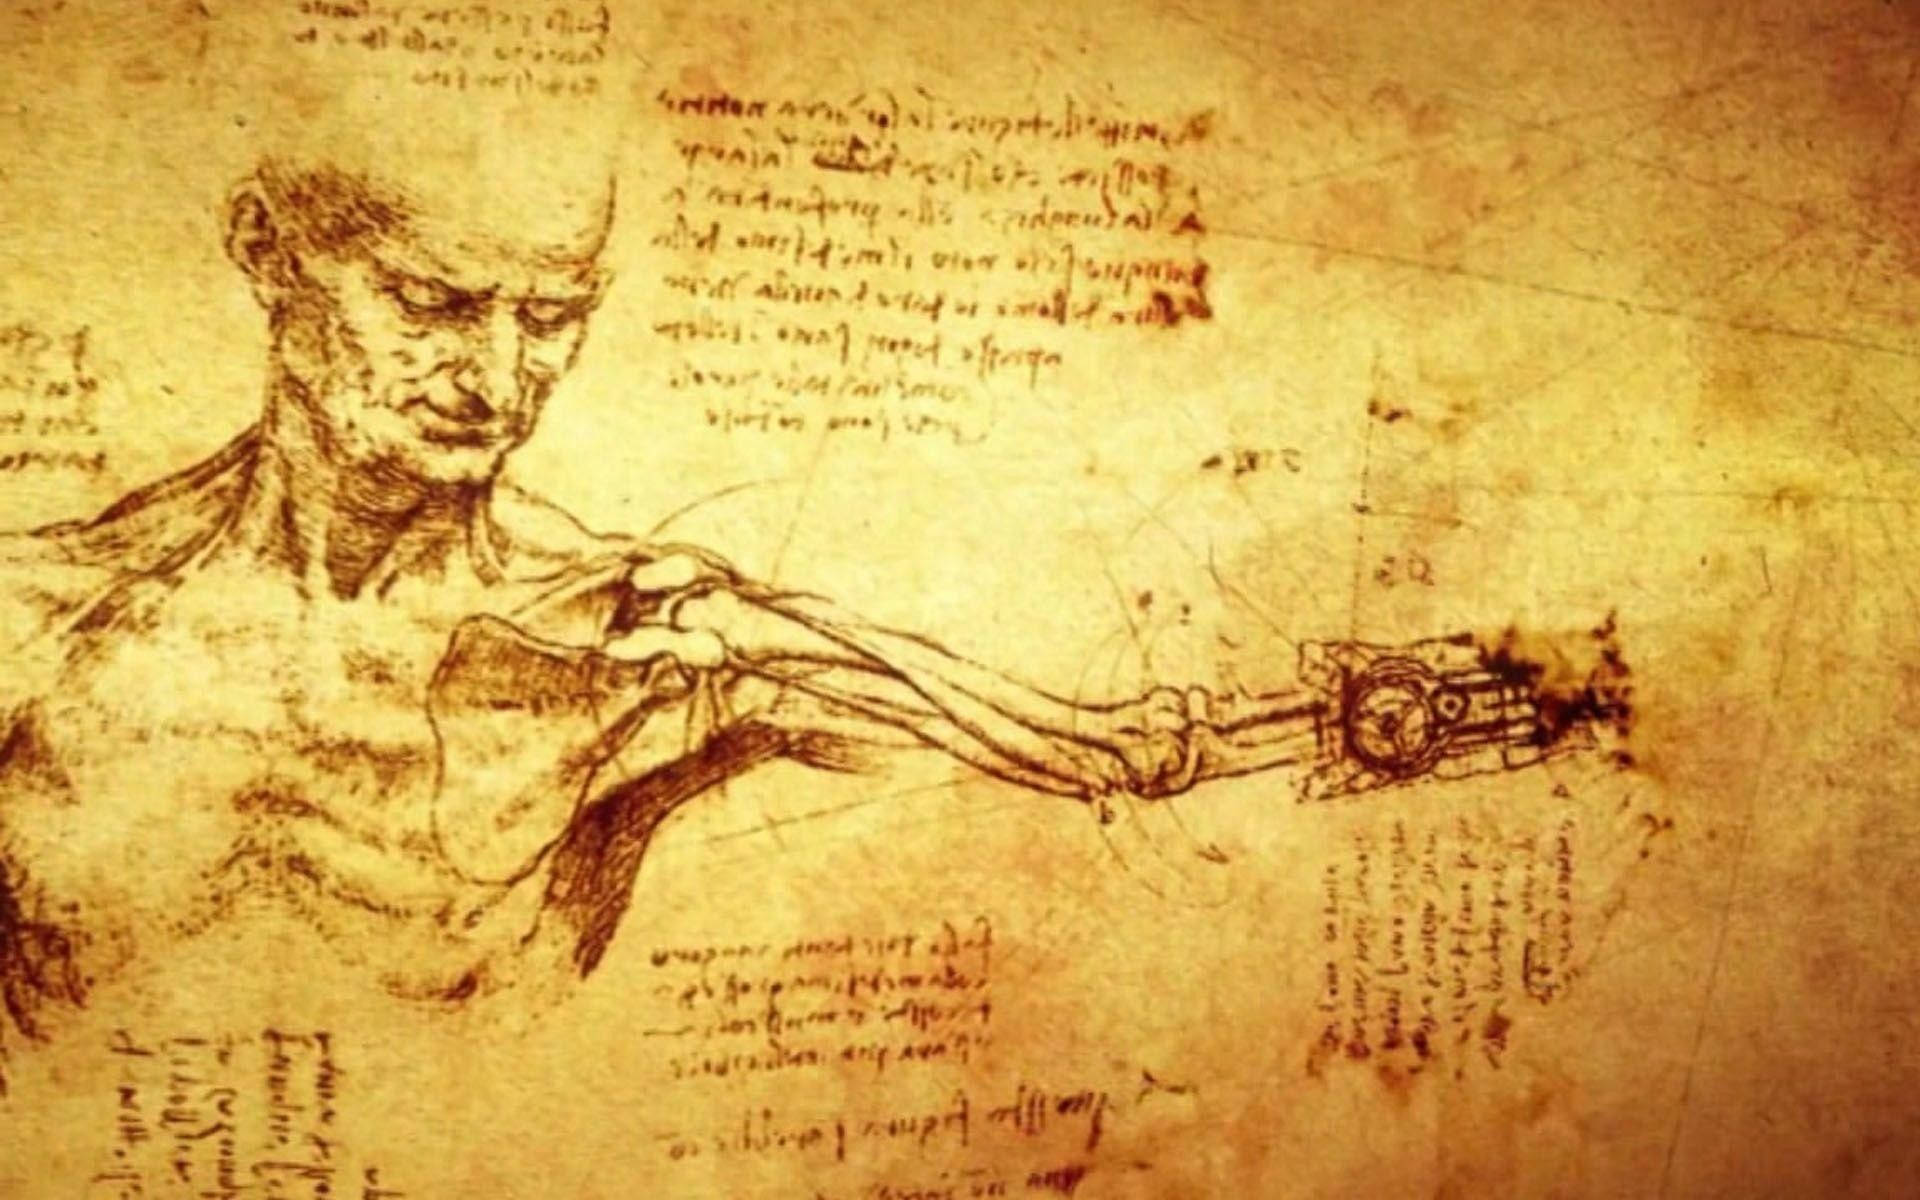 Download Leonardo Da Vinci Anatomical Drawings Wallpaper 